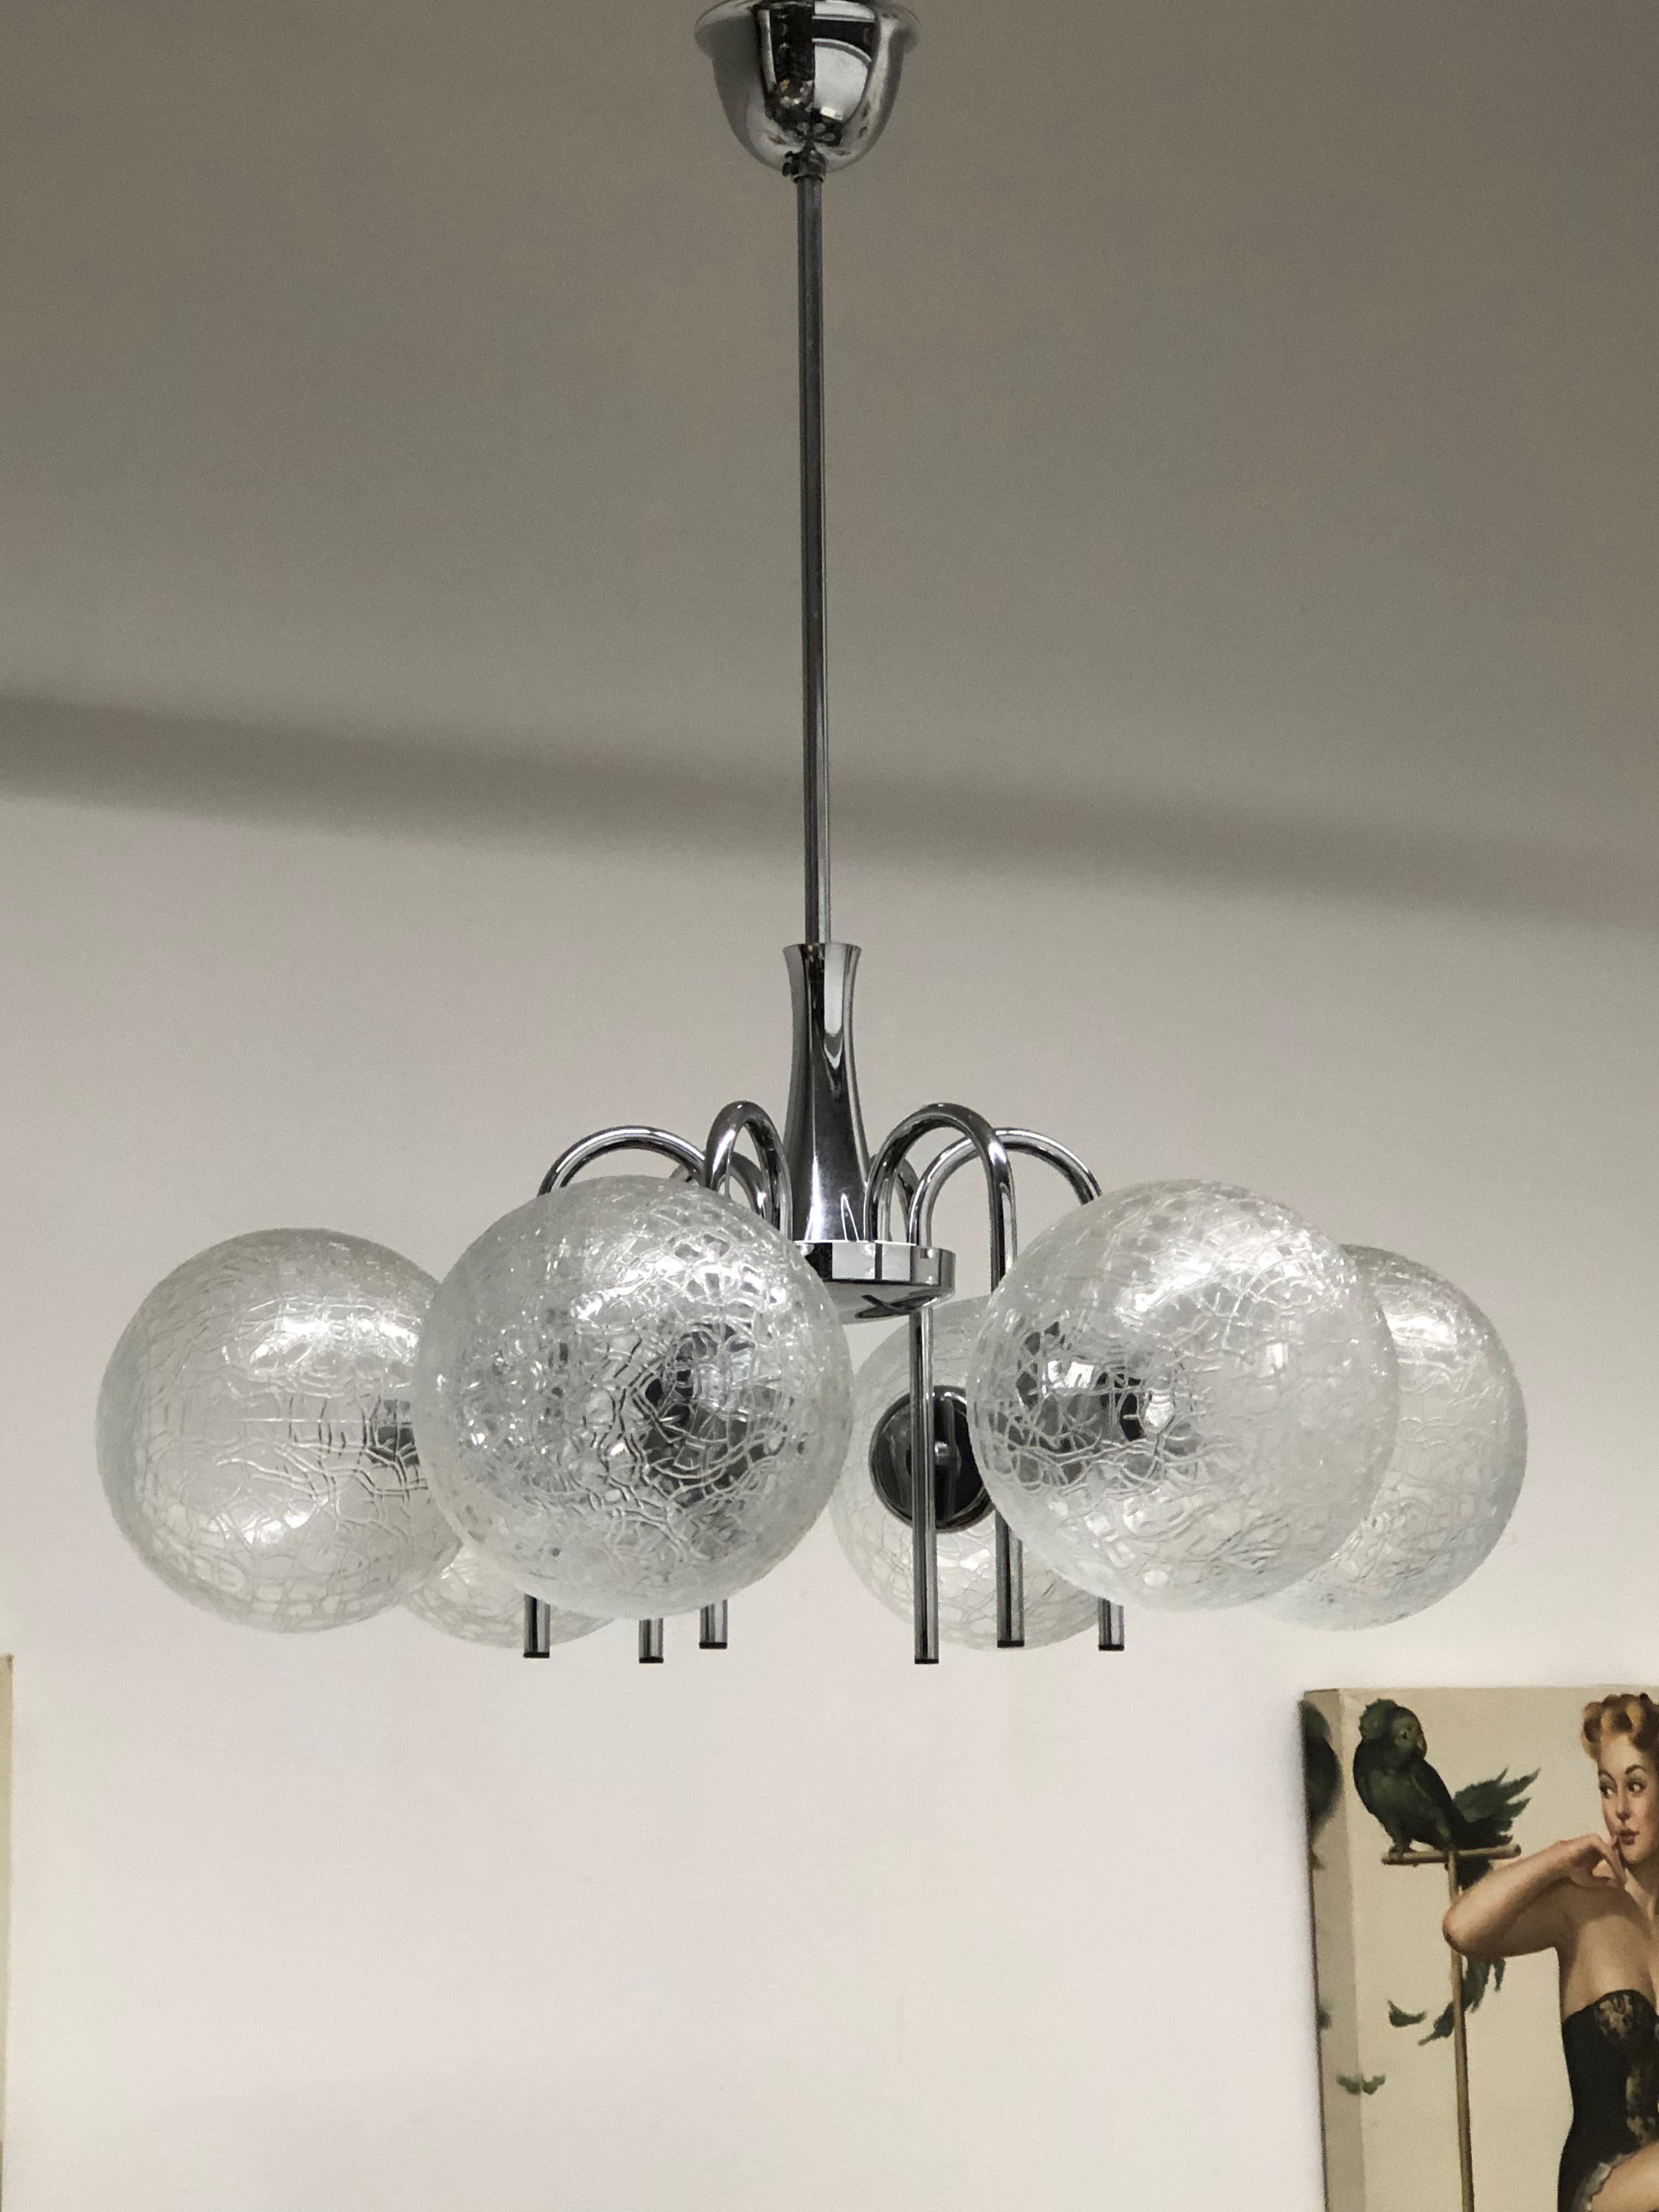 Ce lustre moderne du milieu du siècle a été fabriqué dans les années 1960 en Allemagne. Elle est composée de six boules de verre uniques montées sur un cadre chromé. Le luminaire nécessite six ampoules candélabres européennes E14, chaque ampoule